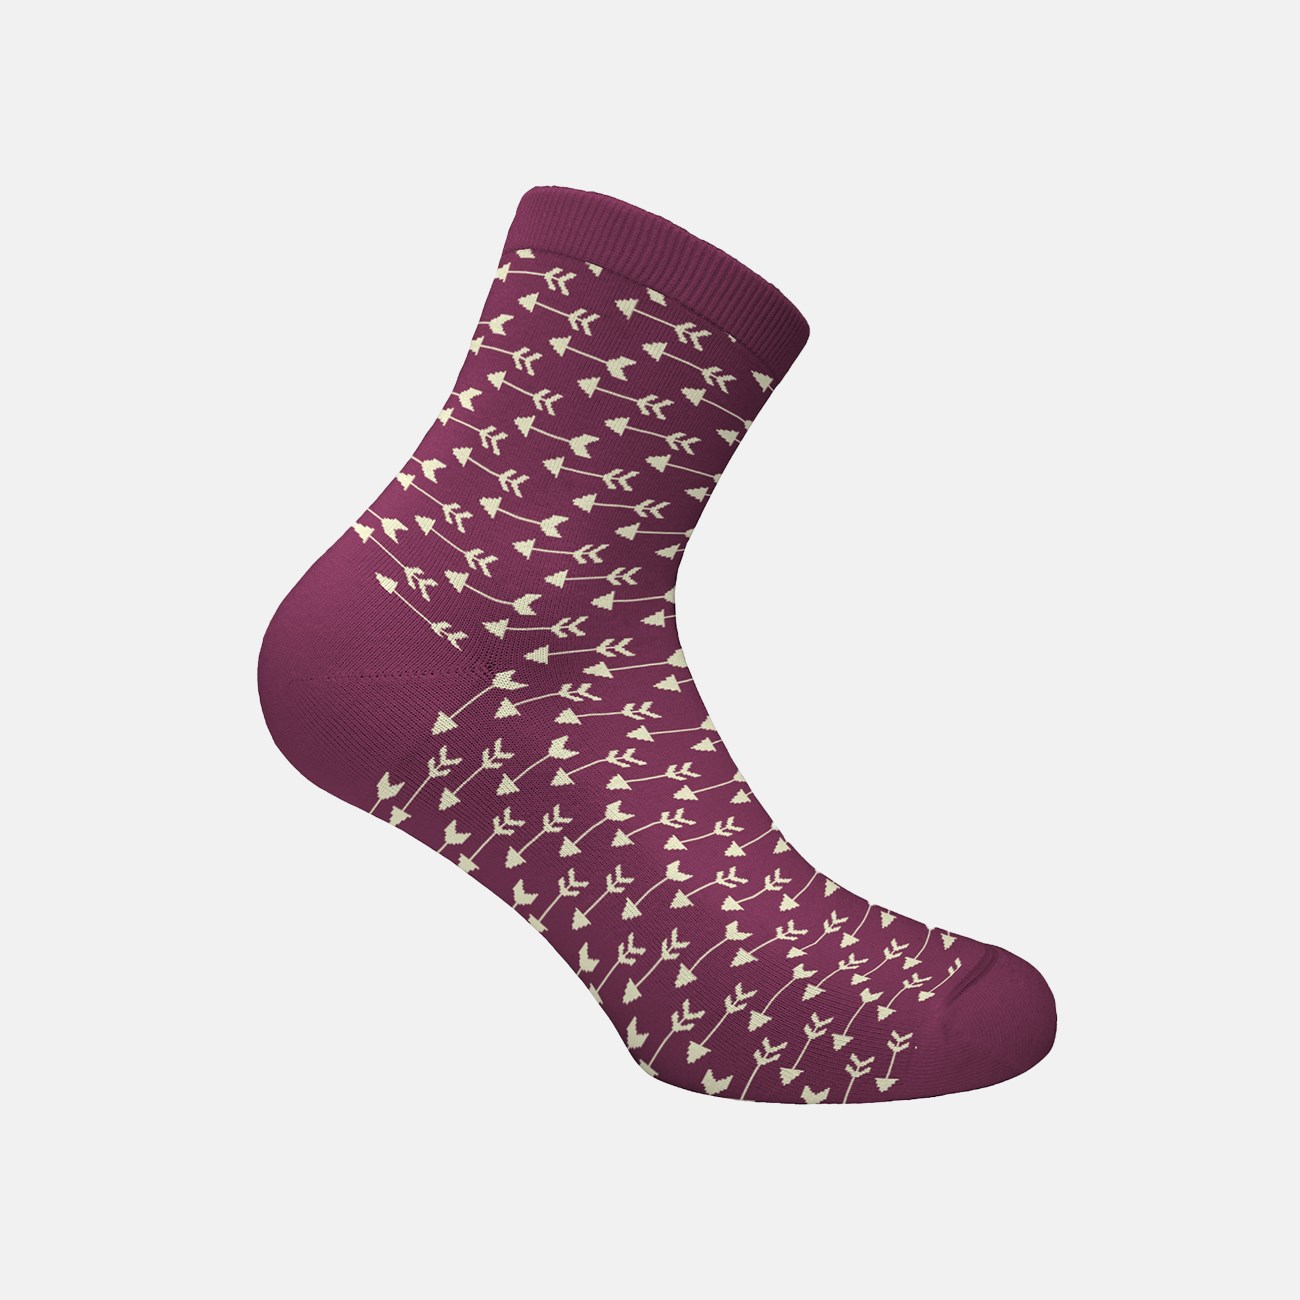  Γυναικείες Κάλτσες Darts W W333-17-39 - The Athlete's Foot